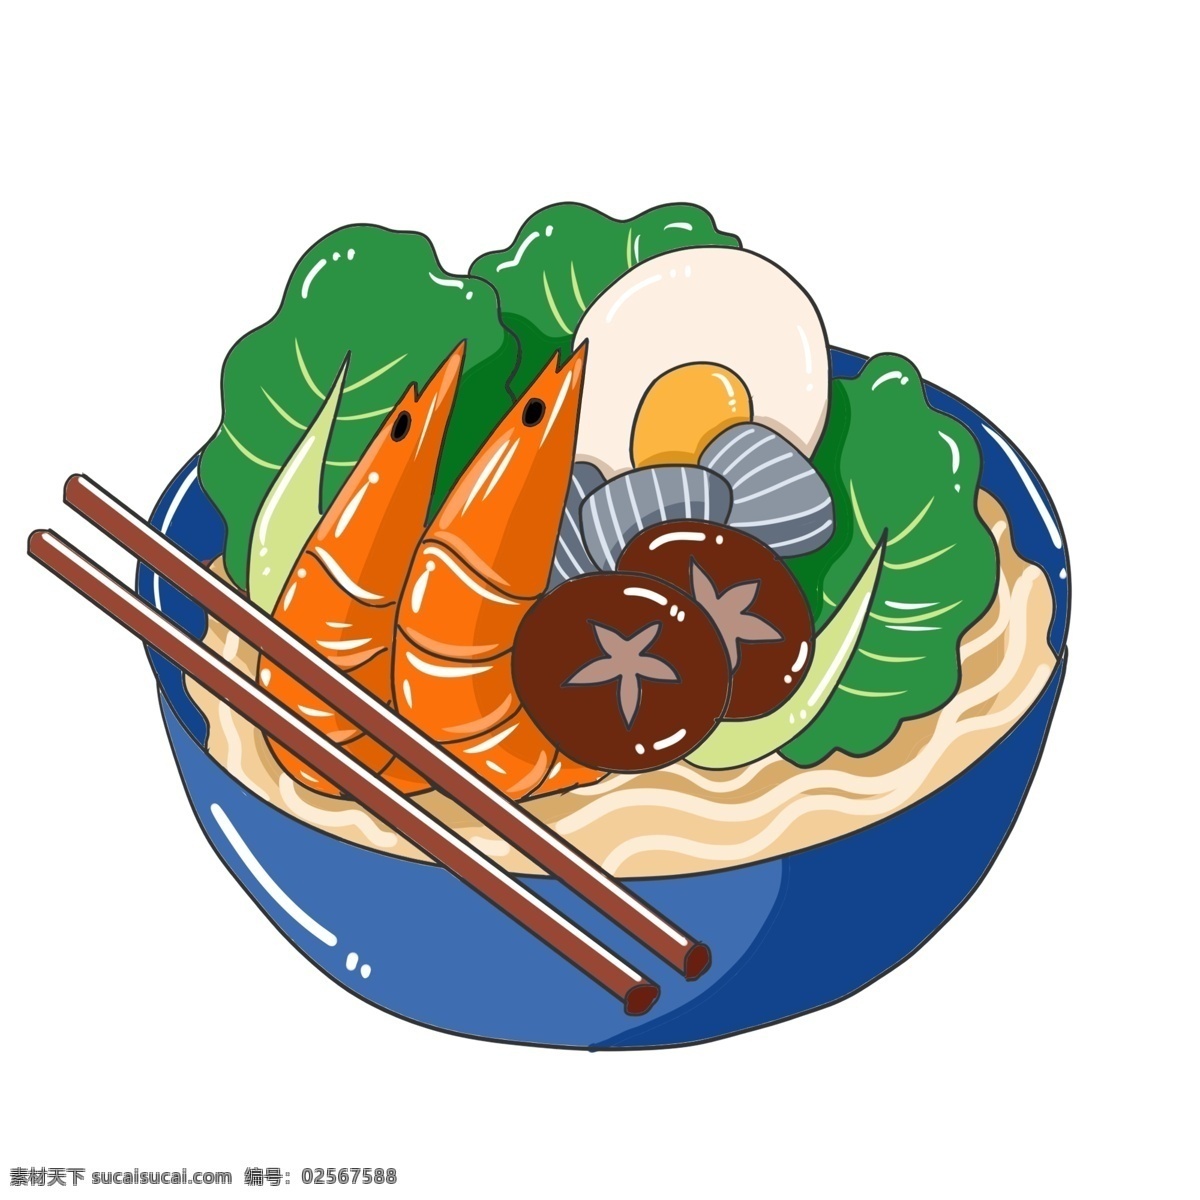 立冬 手绘 海鲜 食 材 食物 一碗热面 大虾 蔬菜 筷子 鸡蛋 包装设计